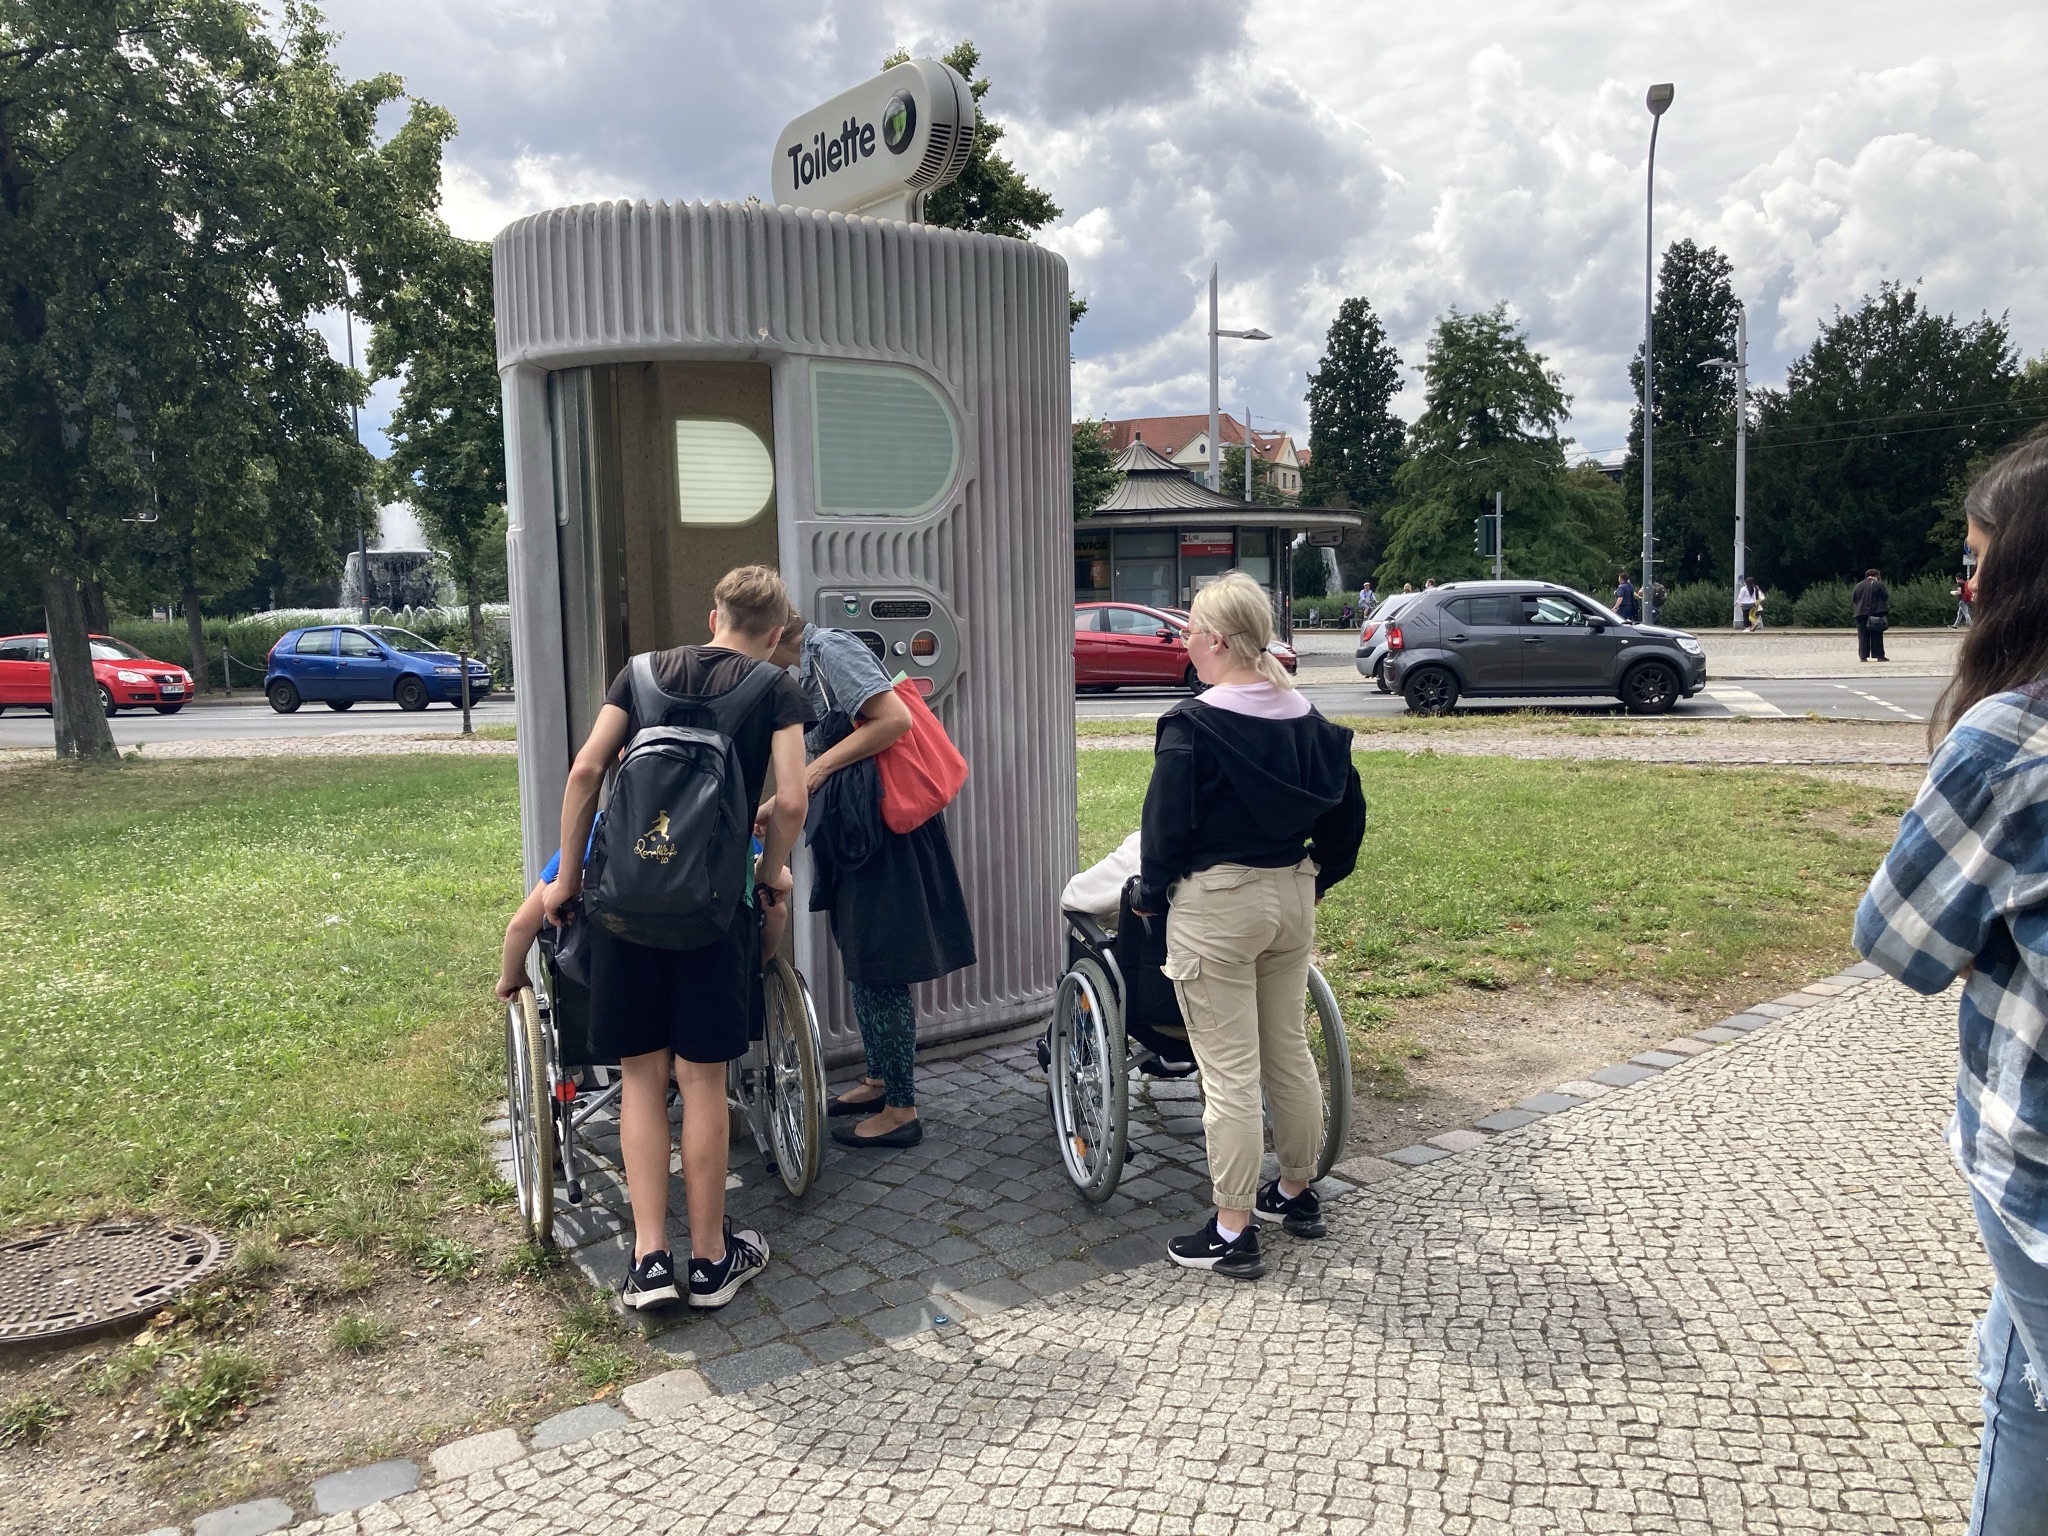 Jugendliche in Rollstühlen vor öffentlicher Toilette